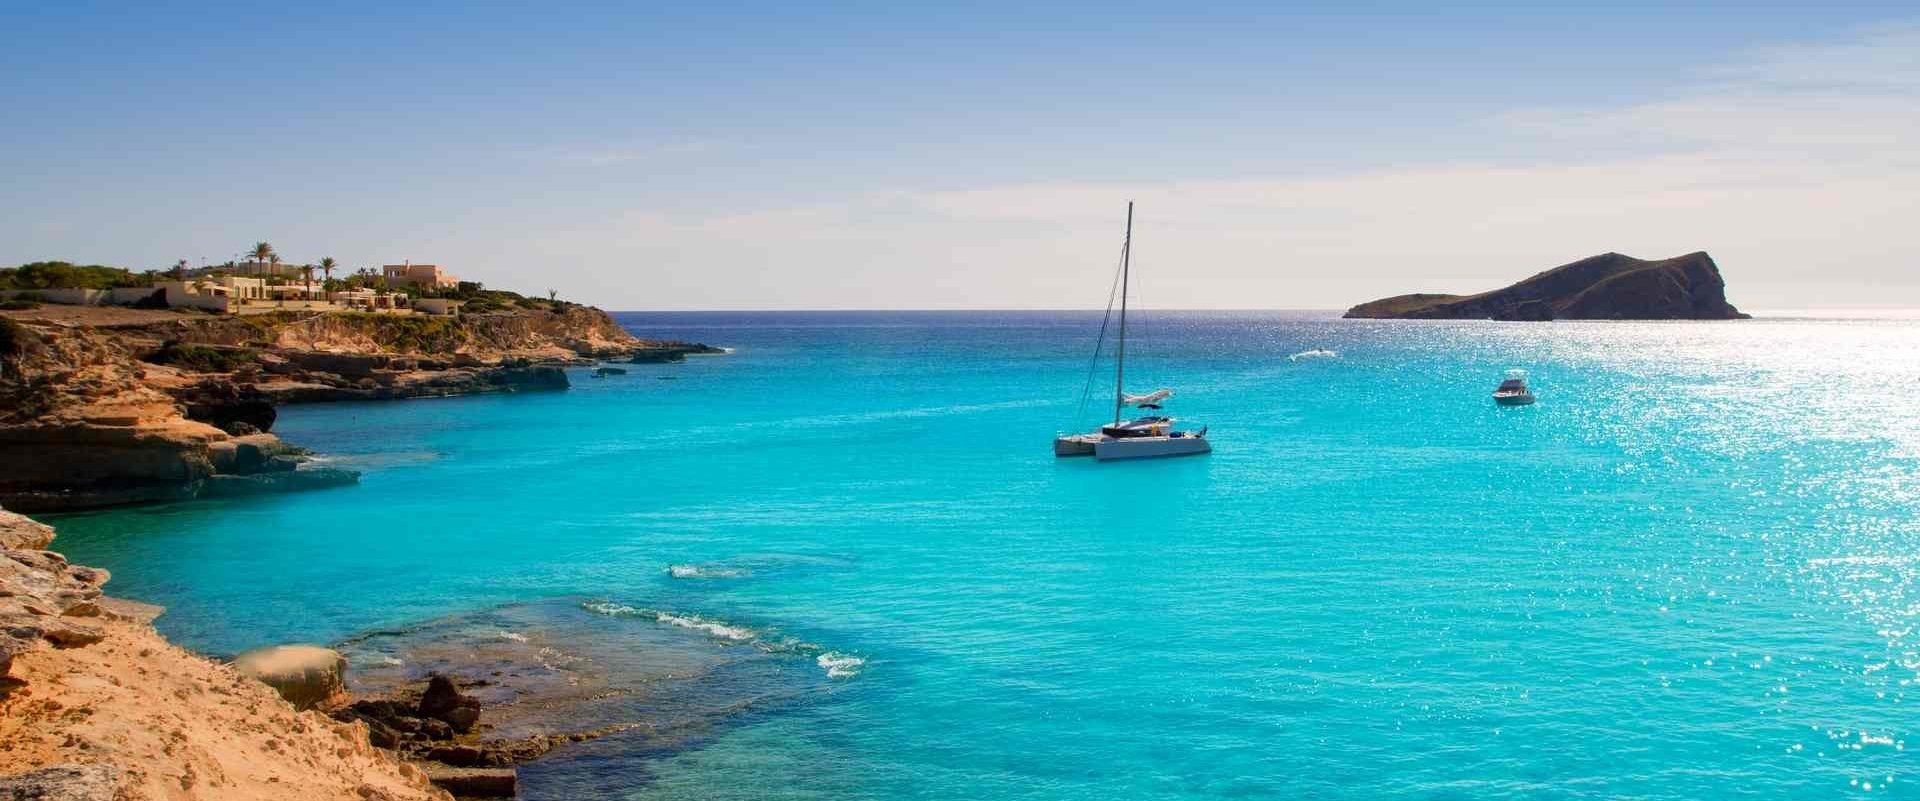 Crociera "All Inclusive": Maiorca e Isole Baleari in catamarano